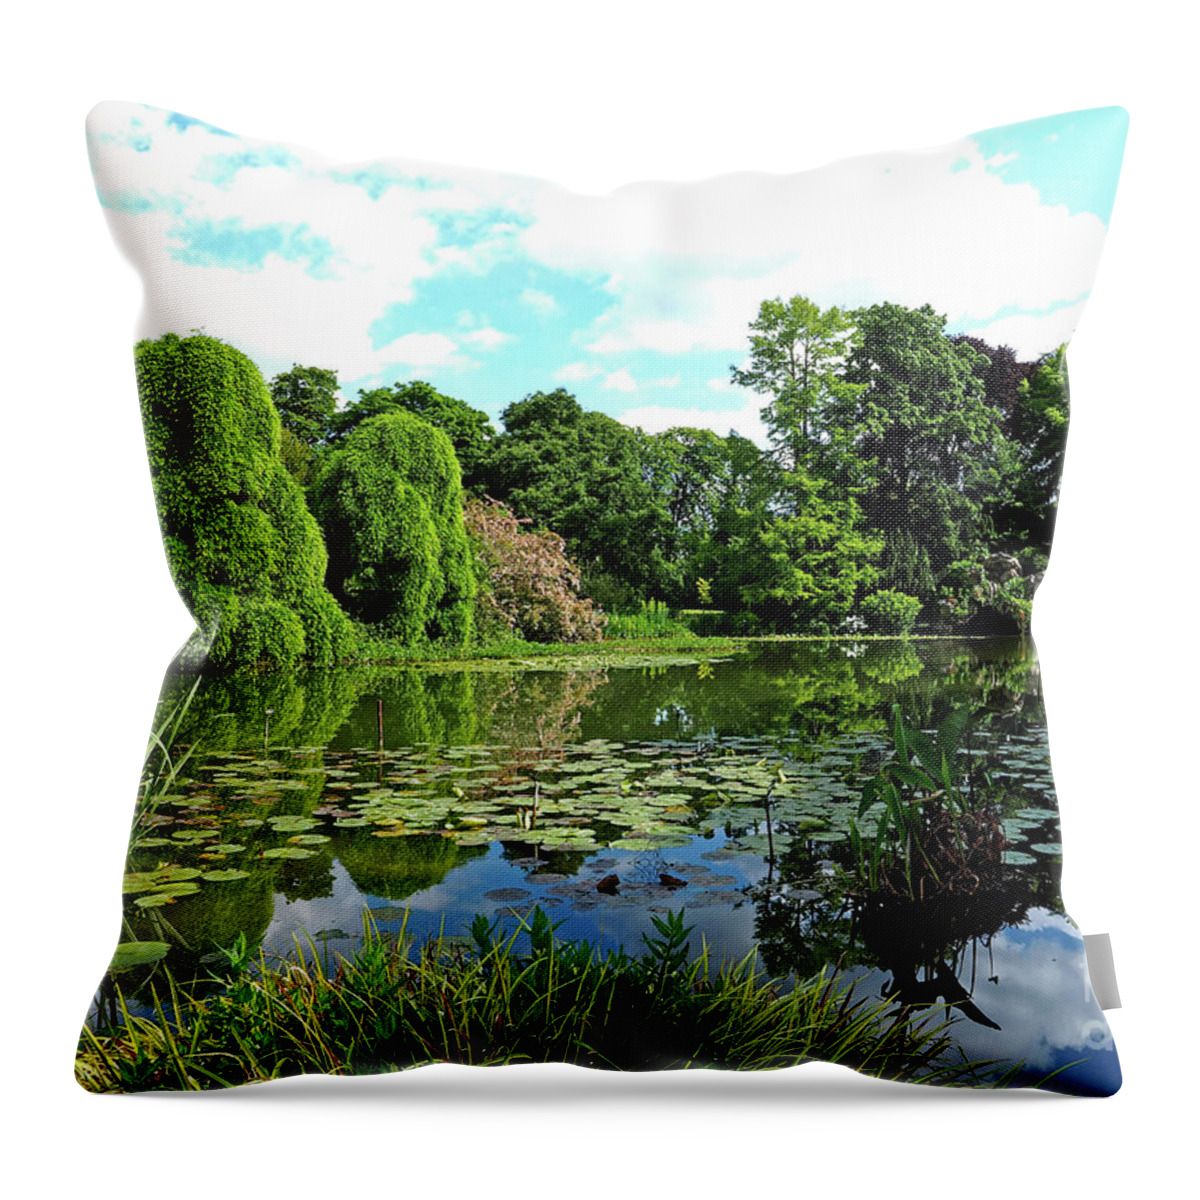 Landscape Throw Pillow featuring the photograph Le Parc de Bagatelle by Alex Cassels